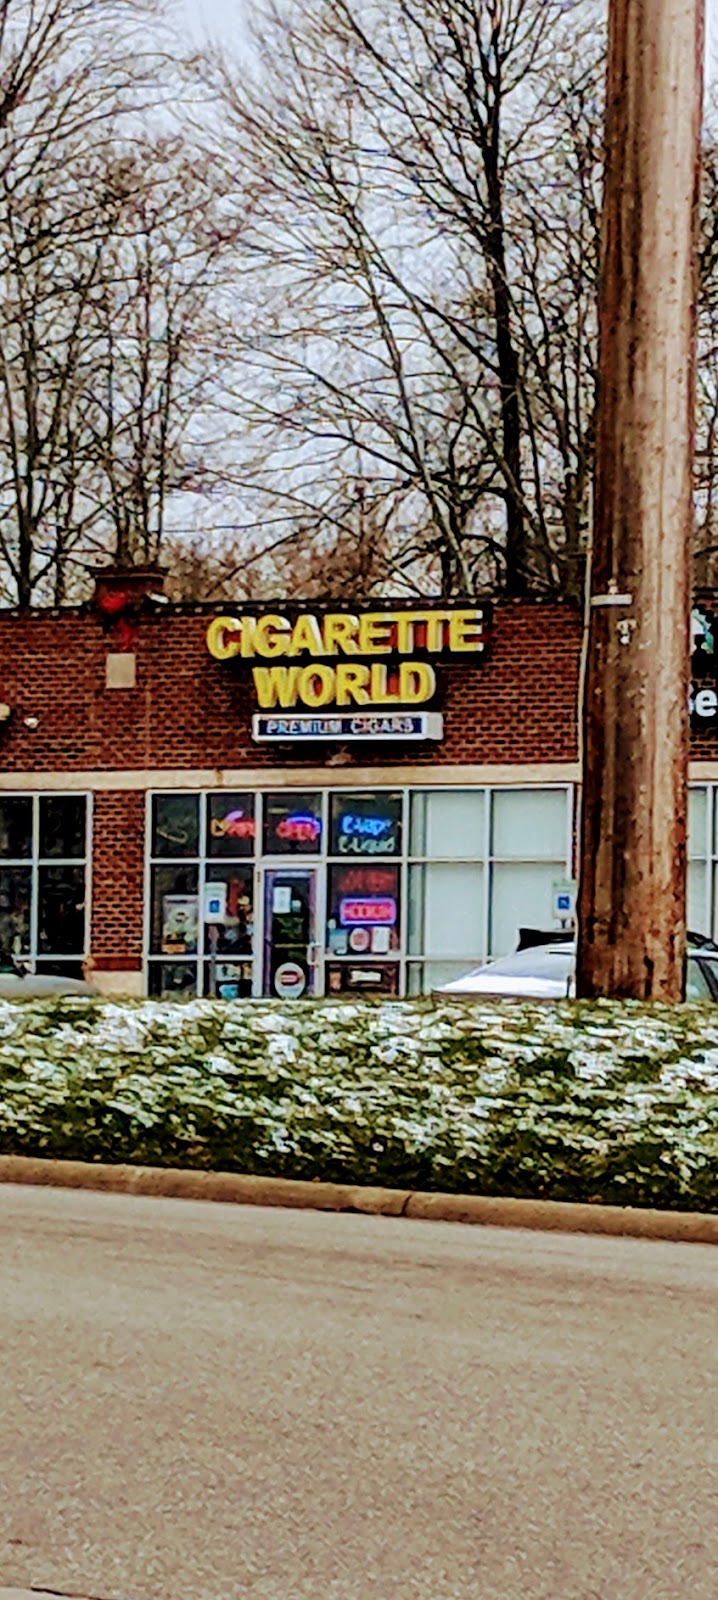 Cigarette World